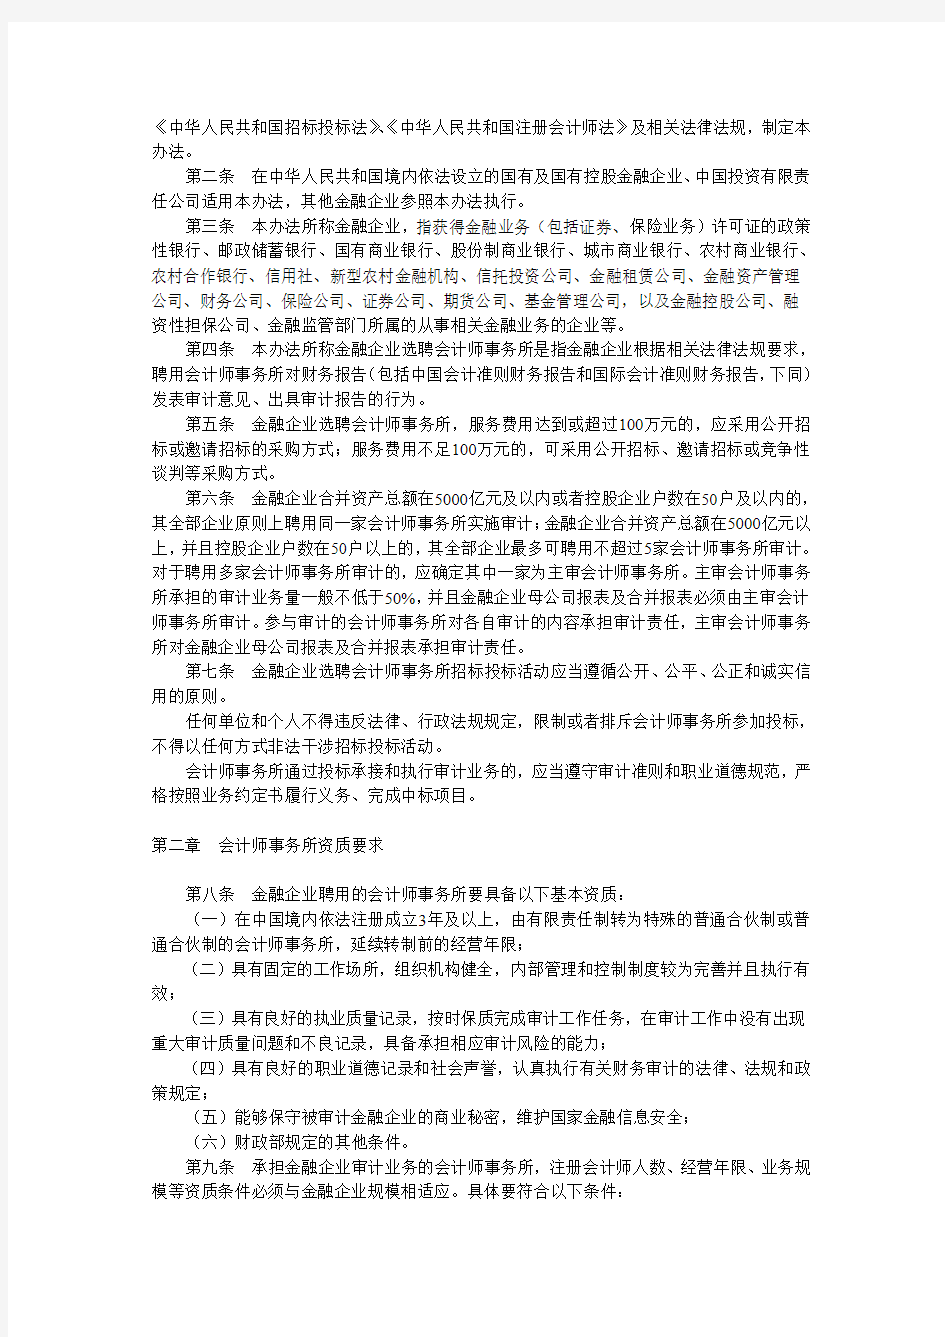 20120228金融企业选聘会计师事务所招标管理办法(试行)